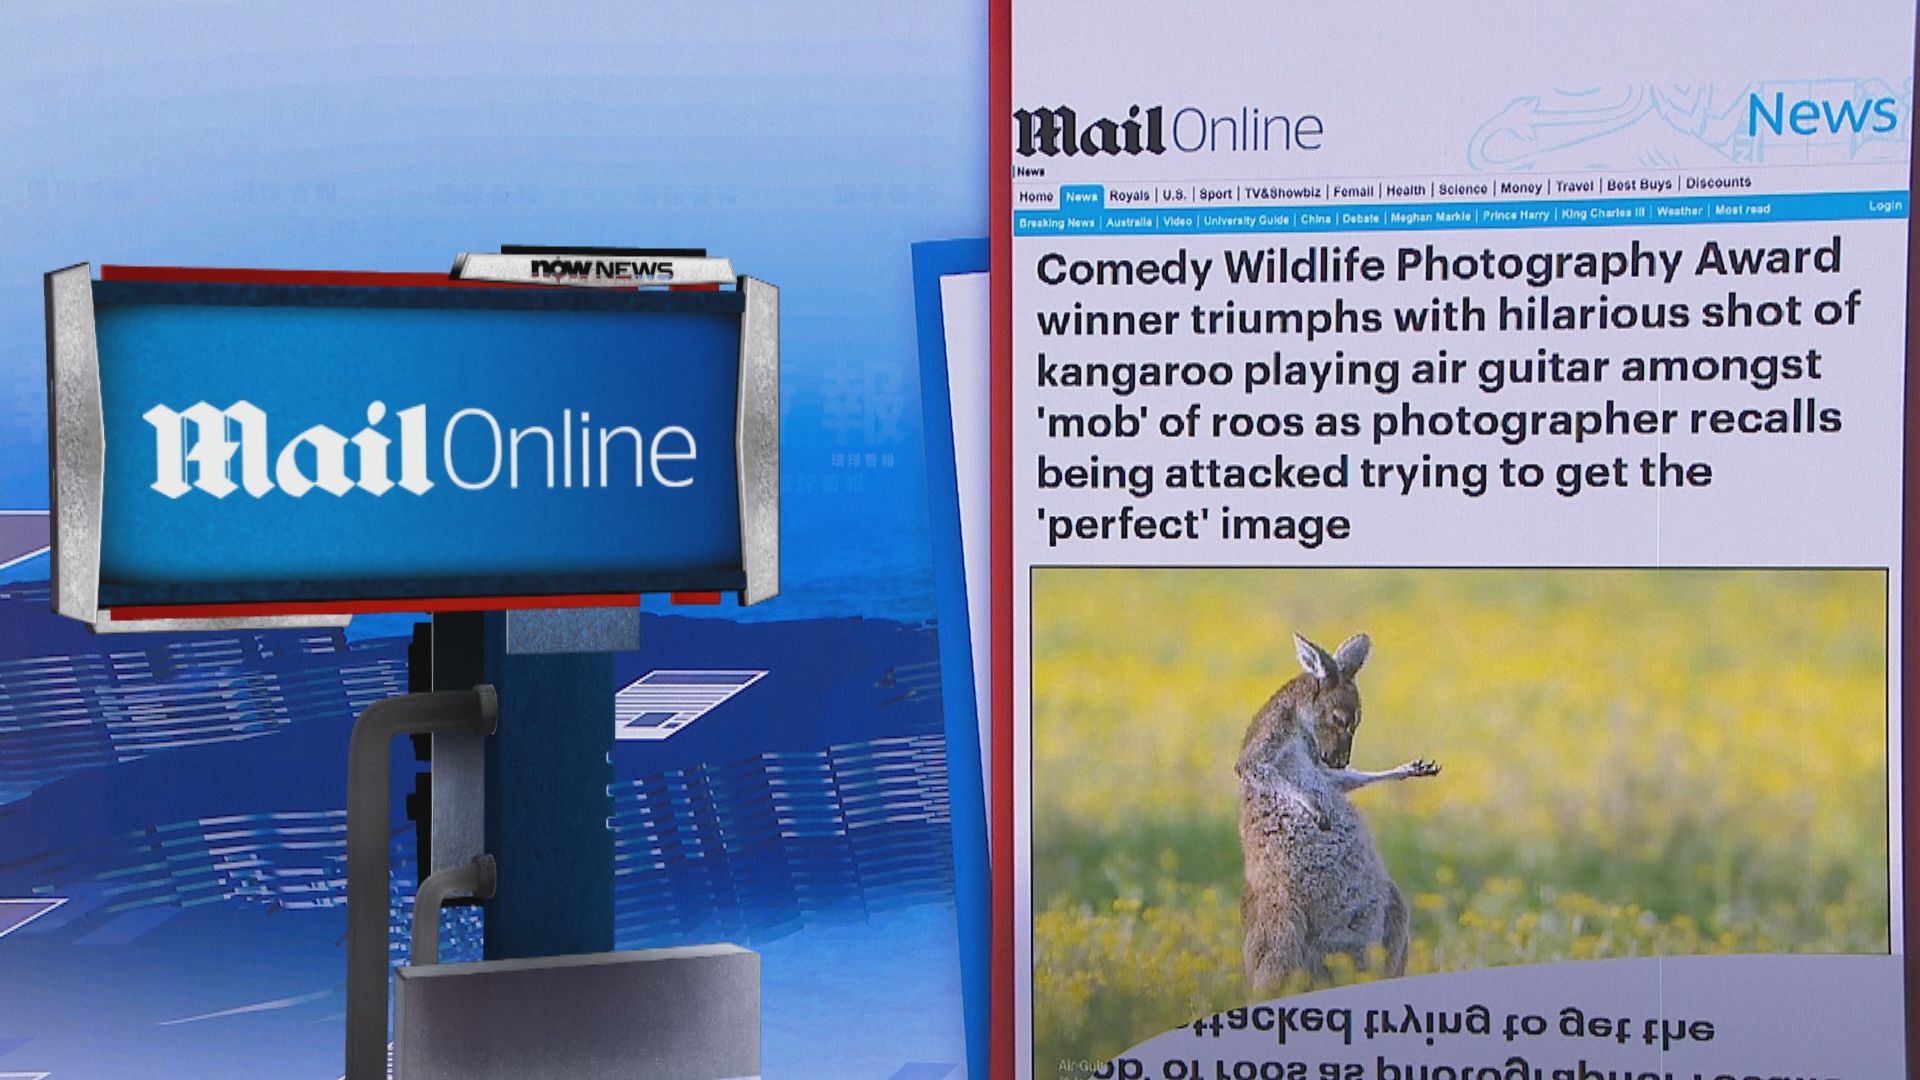 【環球薈報】澳洲攝影師憑袋鼠「彈結他」照片奪搞笑野生動物攝影獎總冠軍